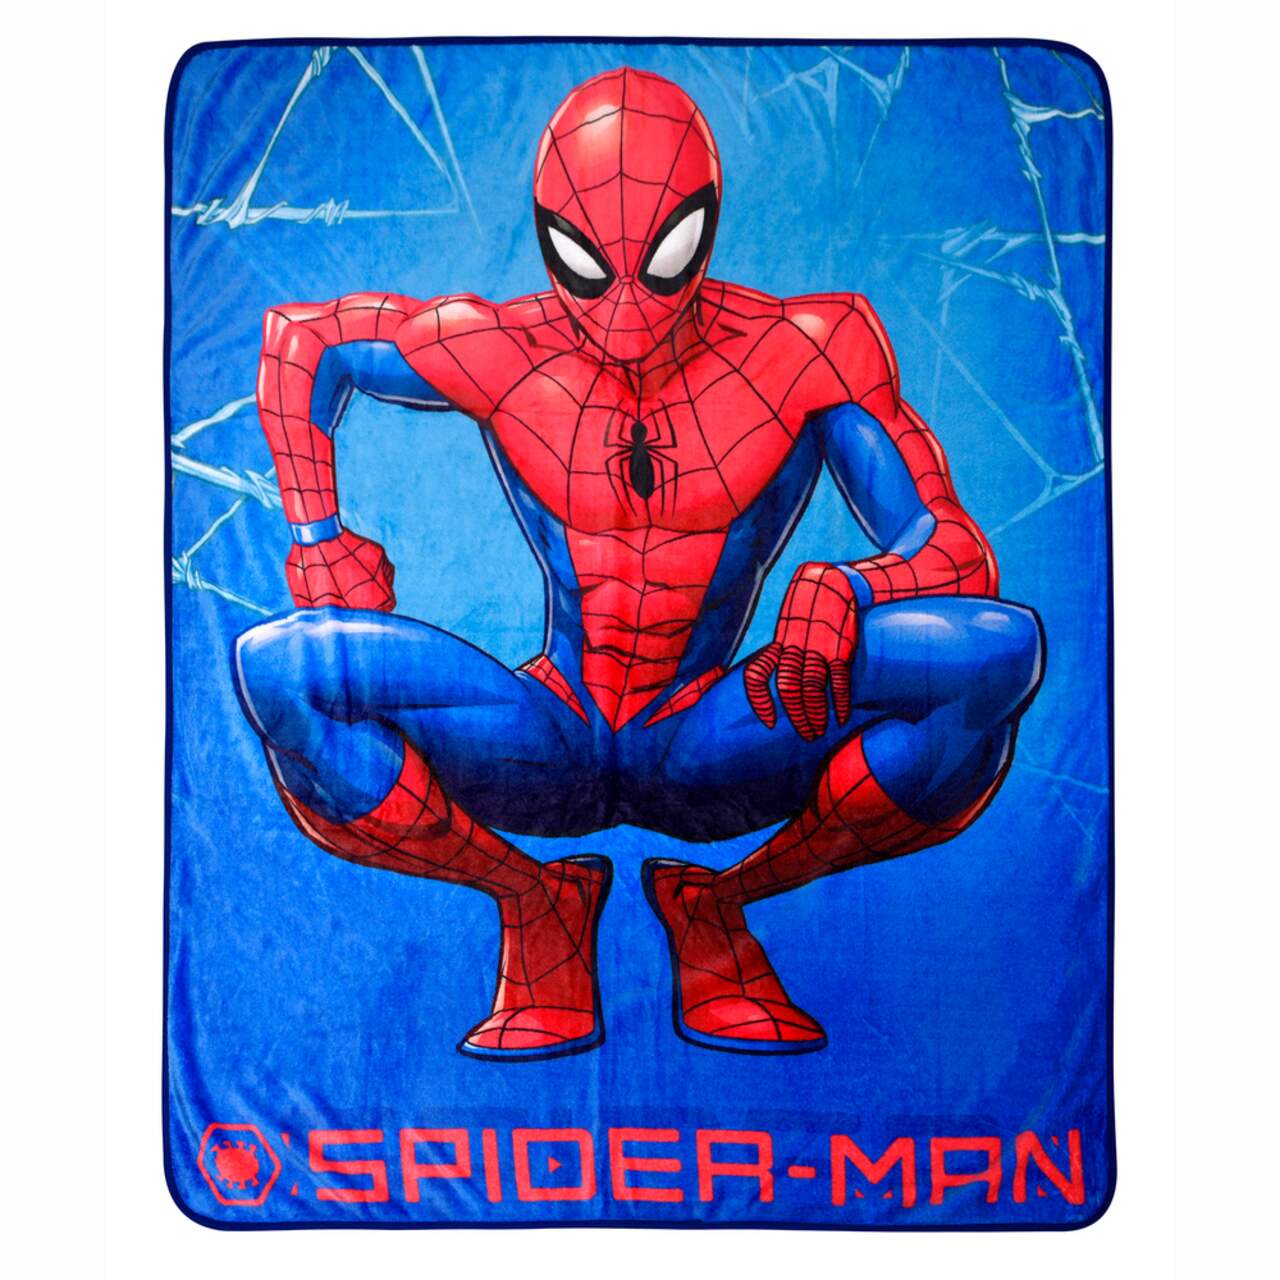 Couverture pour enfants Nemcor Picture Perfect Spiderman, 60 x 80